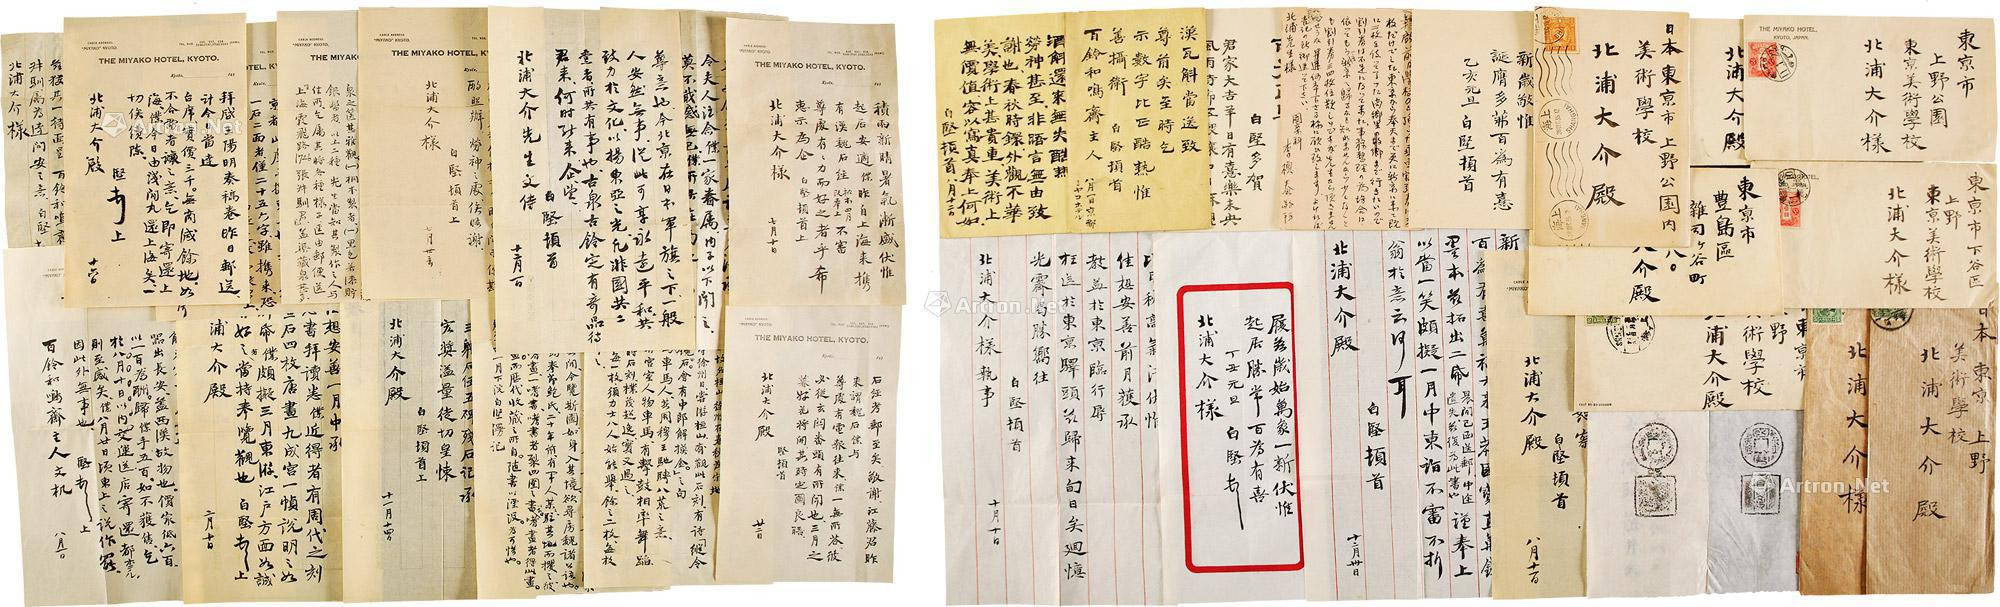 Group of twenty letters of Li Zhentai and Bai Longping (Bai Jian)， with original covers